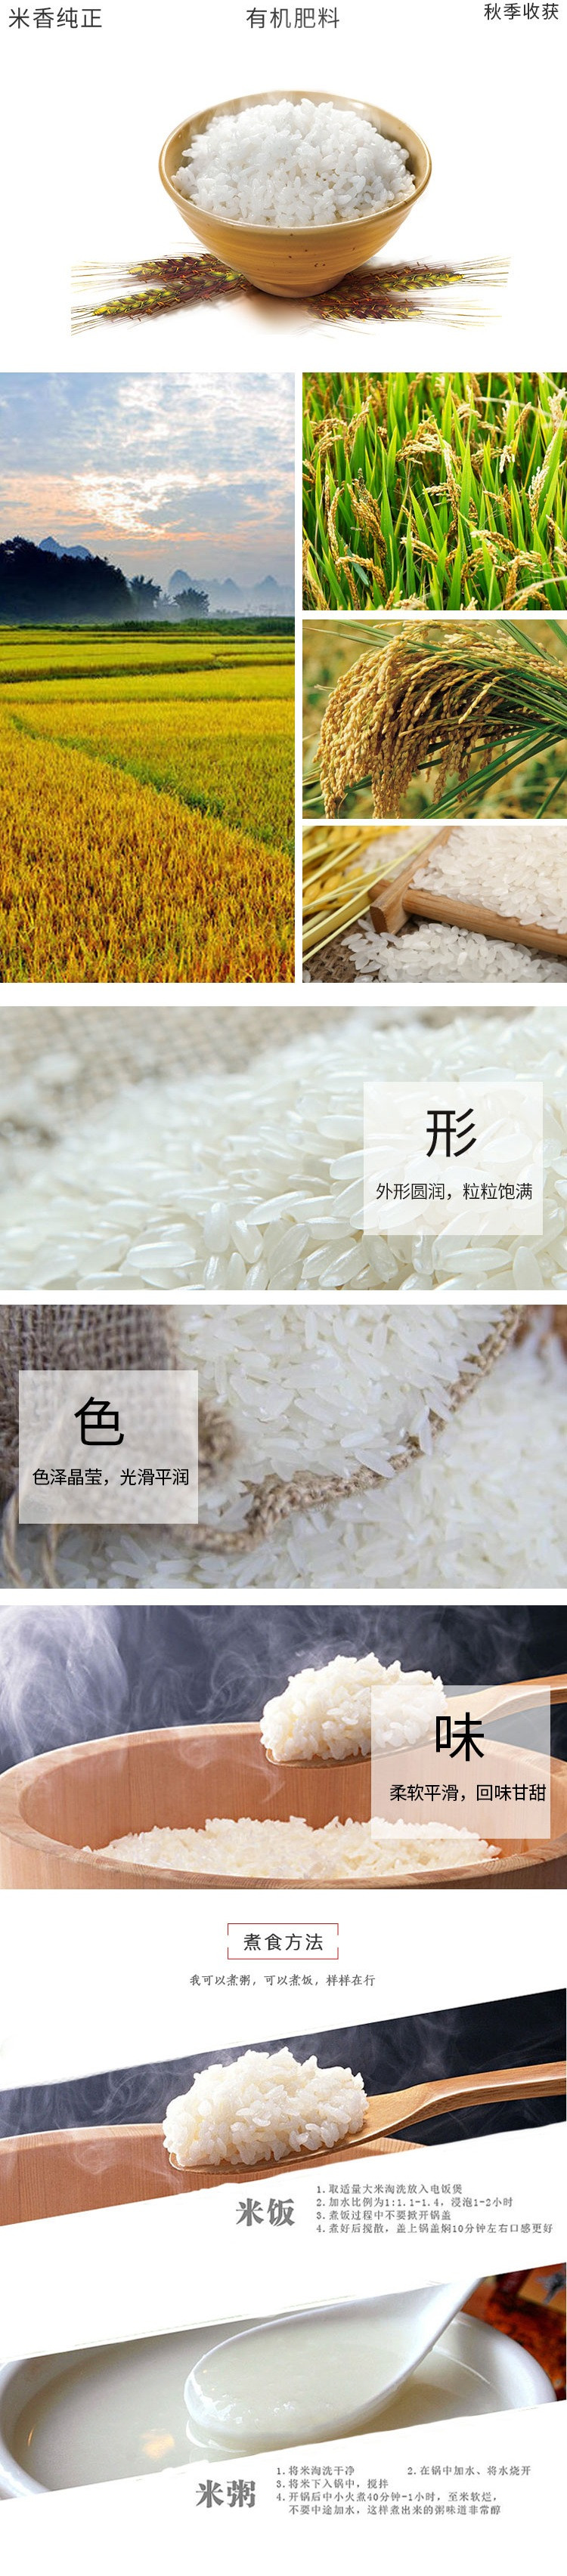  鲜禾鲜 珍优米礼盒 稻花香月光米大米